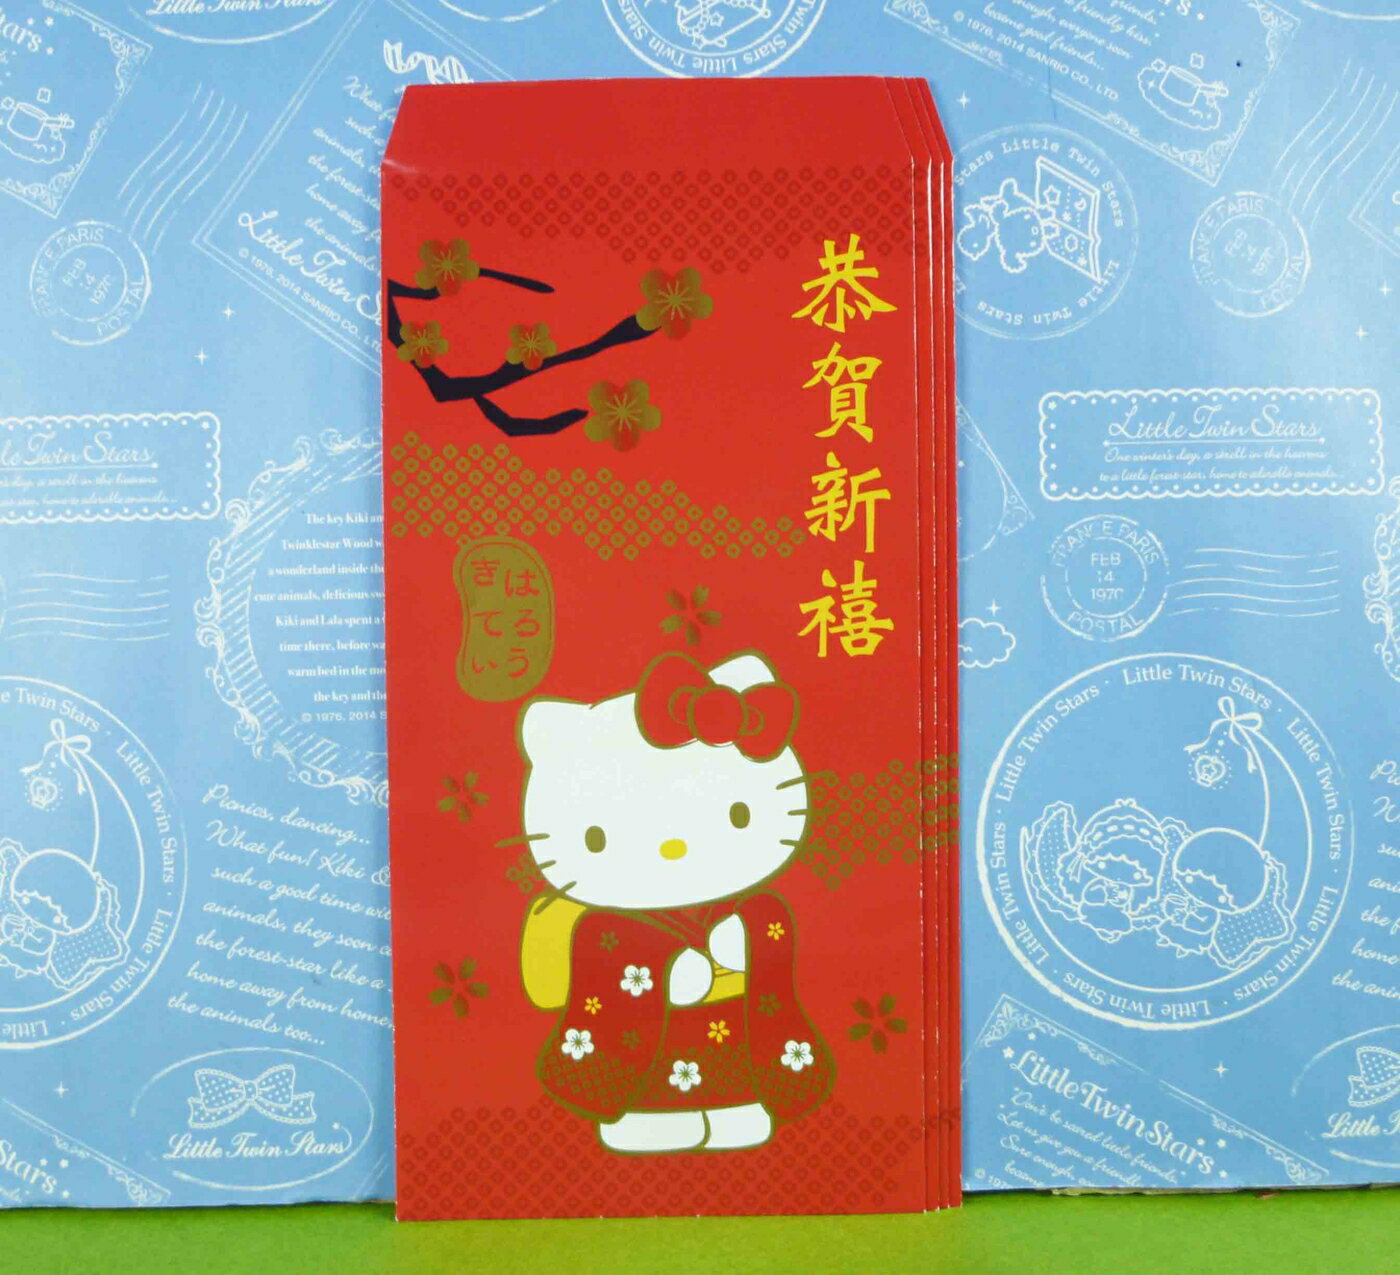 【震撼精品百貨】Hello Kitty 凱蒂貓 紅包袋組 和服圖案【共1款】 震撼日式精品百貨